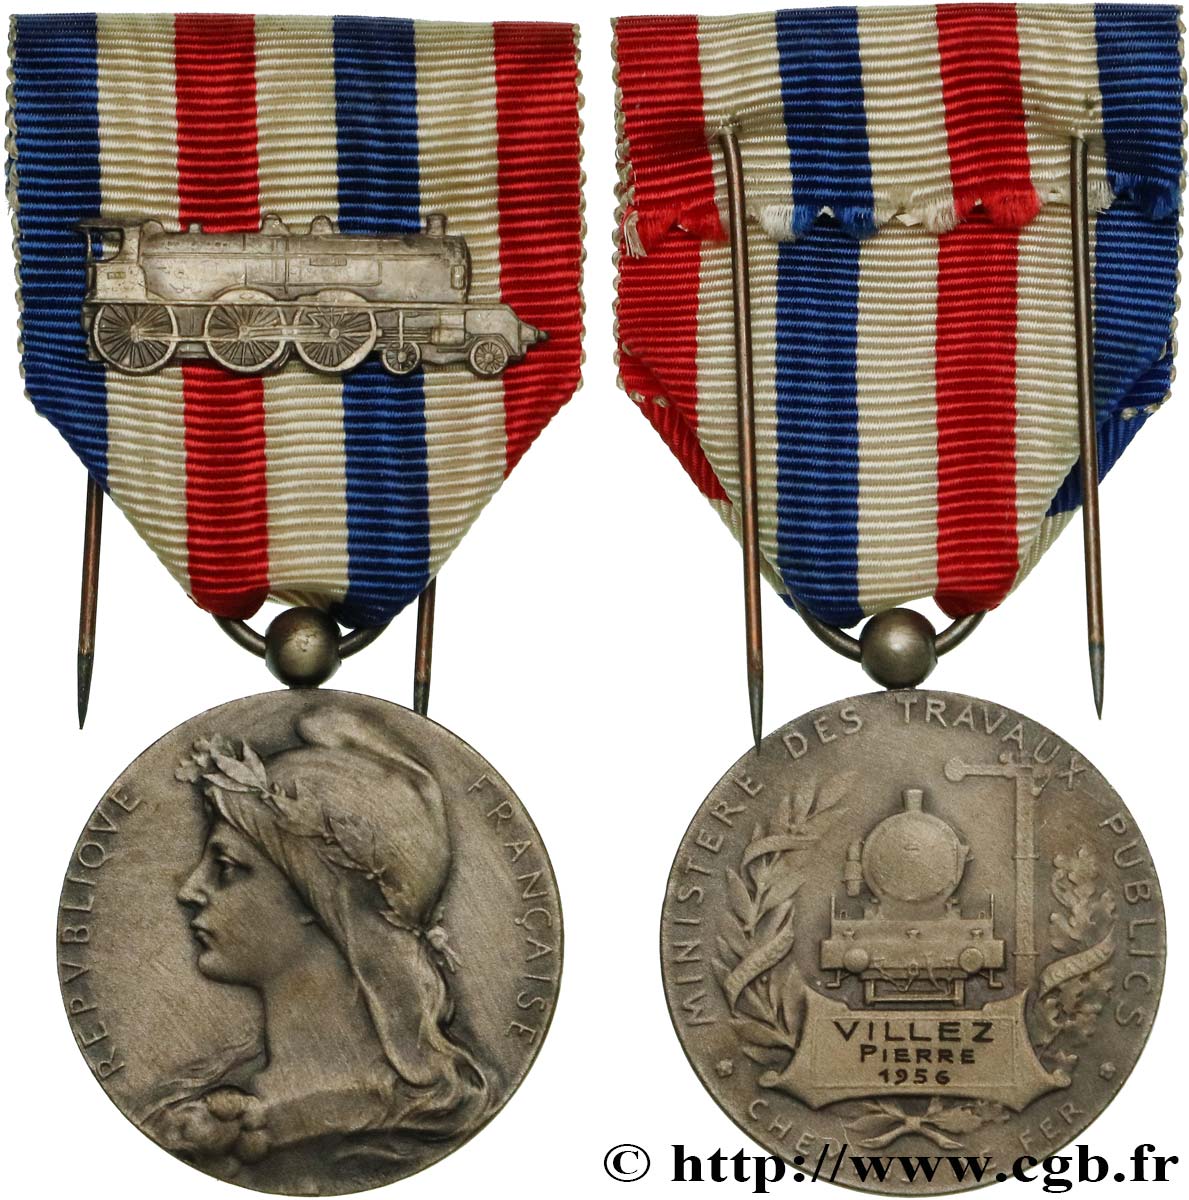 IV REPUBLIC Médaille des Chemins de Fer, Ministère des travaux publics XF